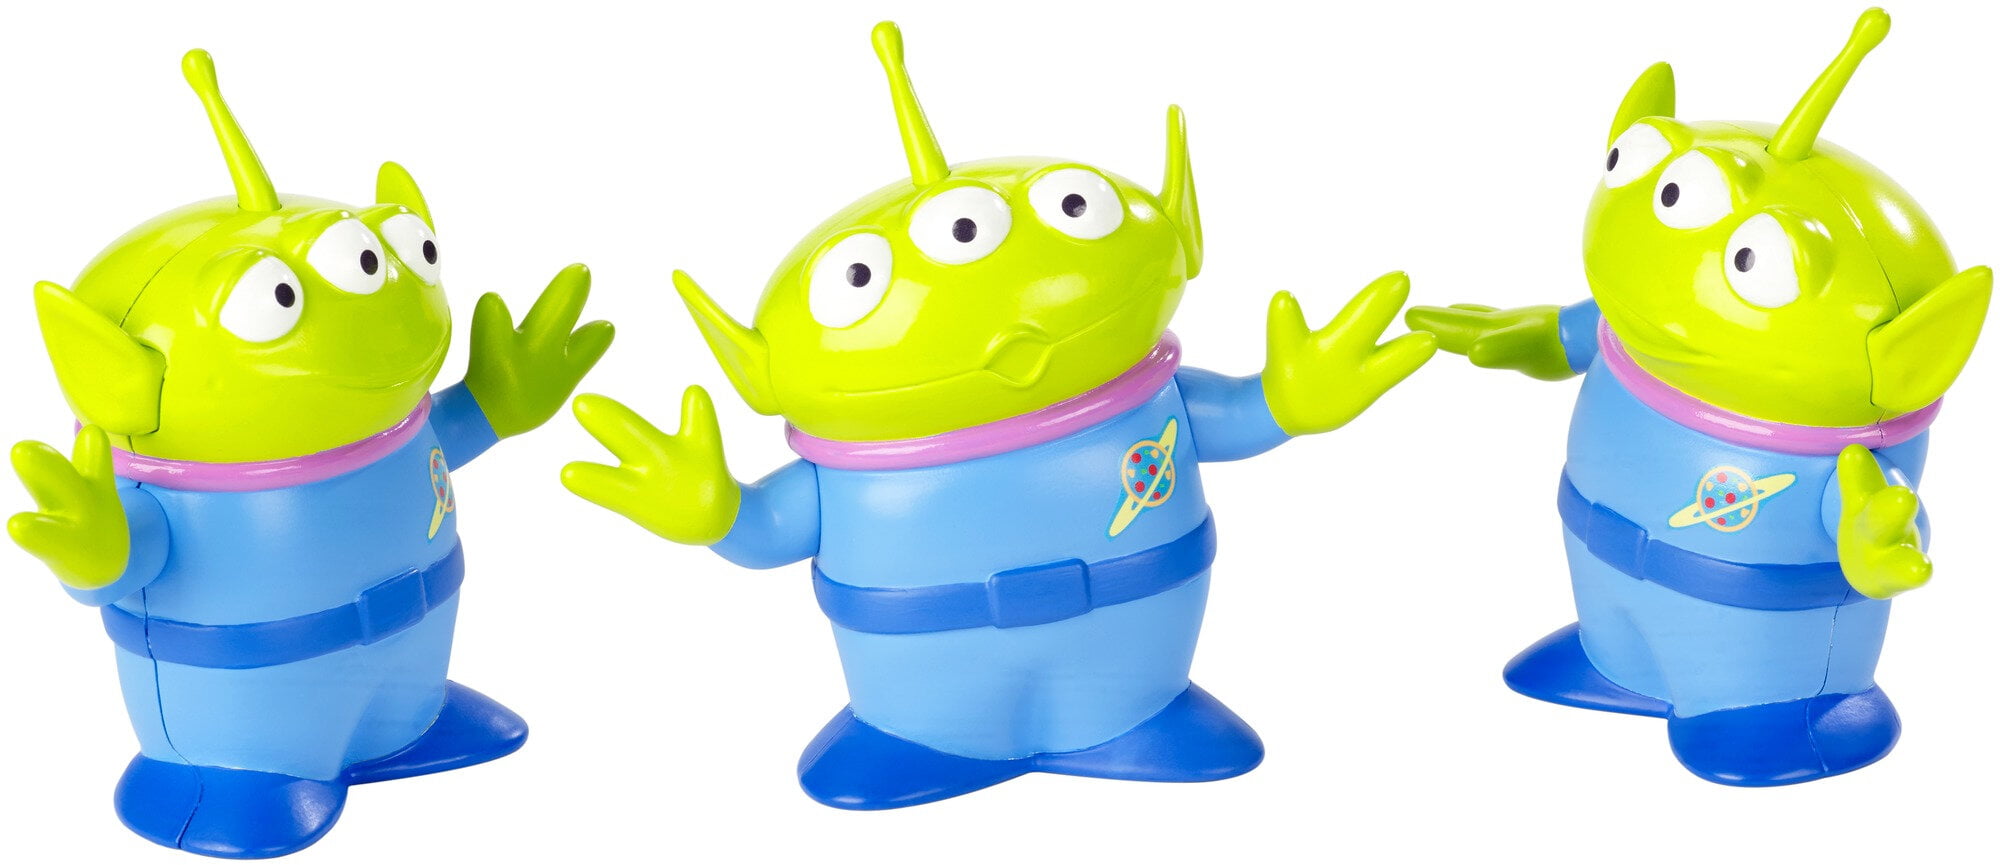 Disney/Pixar Toy Story Space Aliens Figures 3-Pack